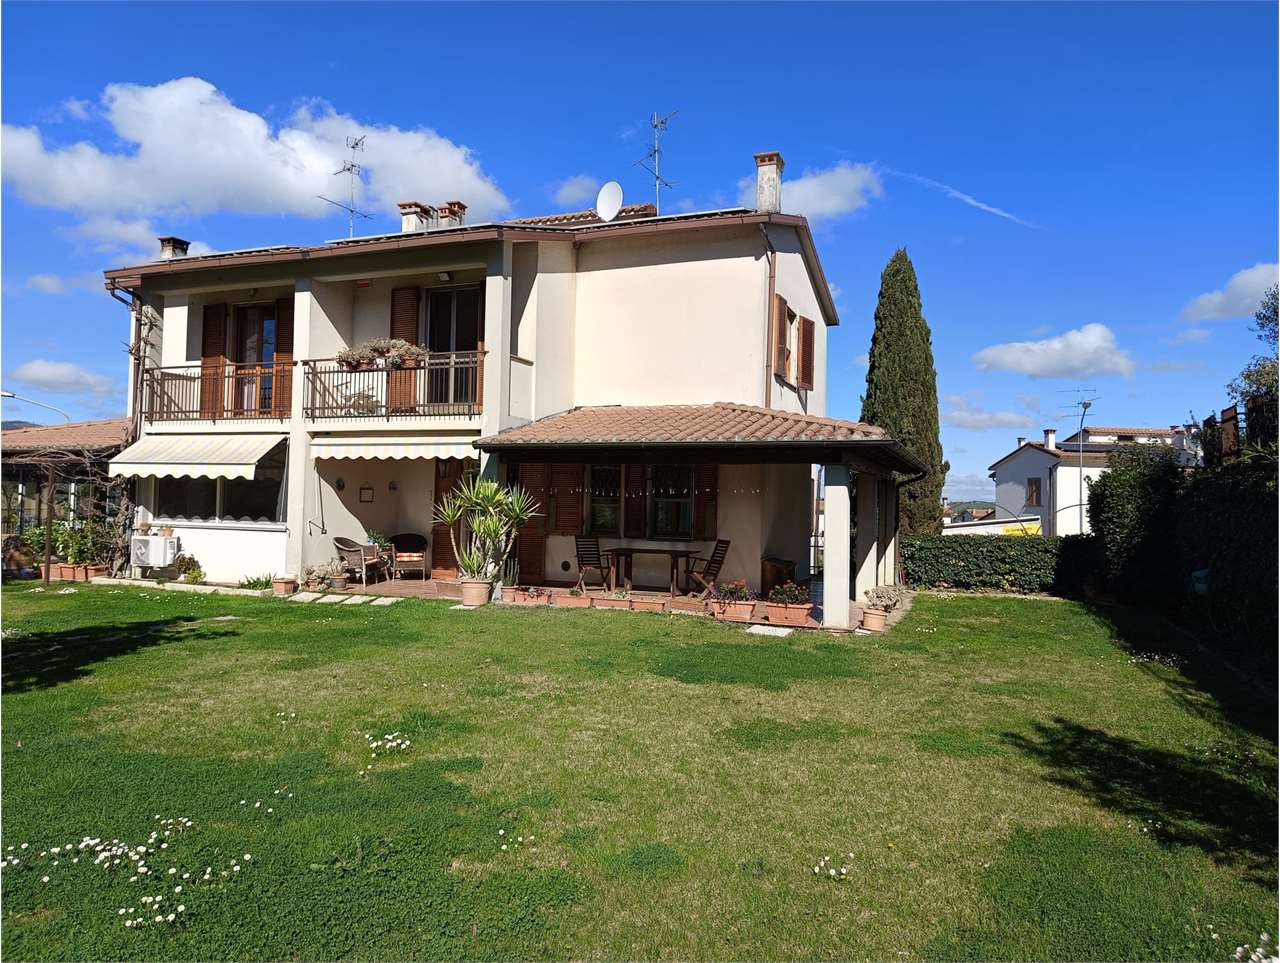 Villa in vendita a Todi, 6 locali, prezzo € 270.000 | PortaleAgenzieImmobiliari.it